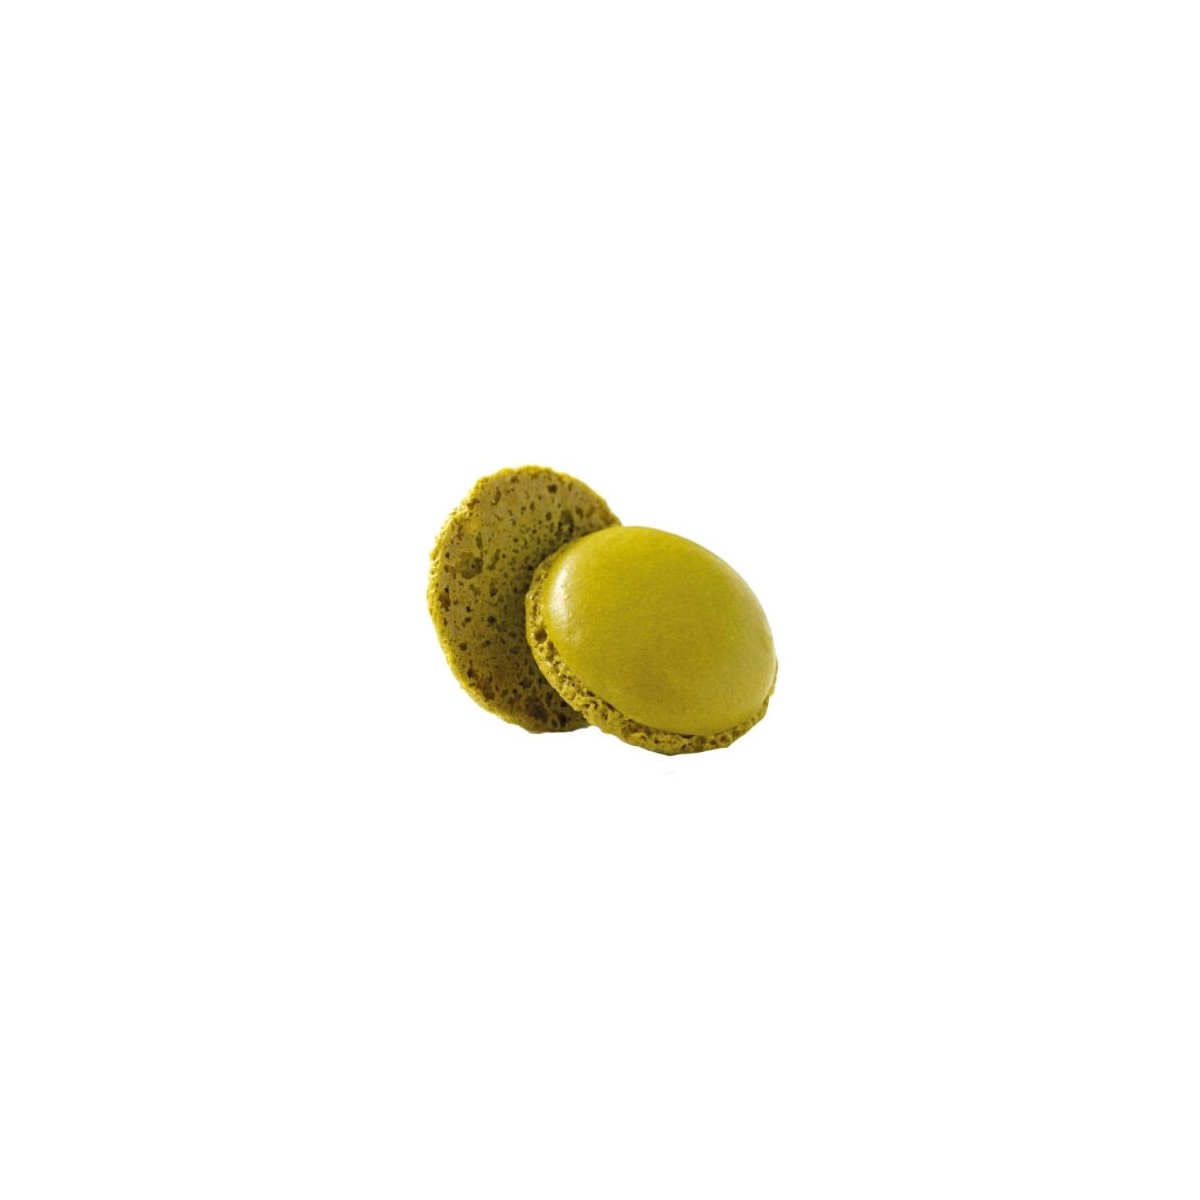 Coque macaron pistache 3.5cm de Paris 160pièces